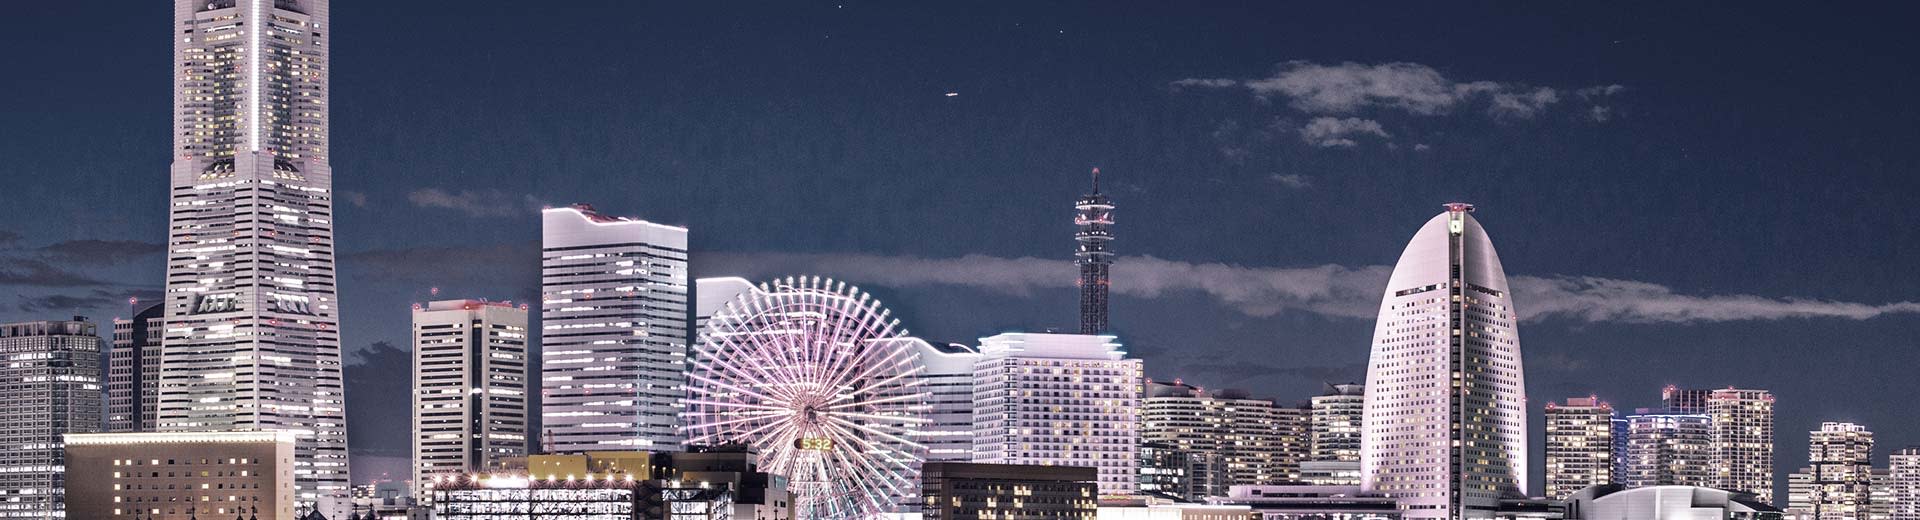 夜幕下的横滨，一排现代摩天大楼点亮了夜色，前景是一座不羁的摩天轮。